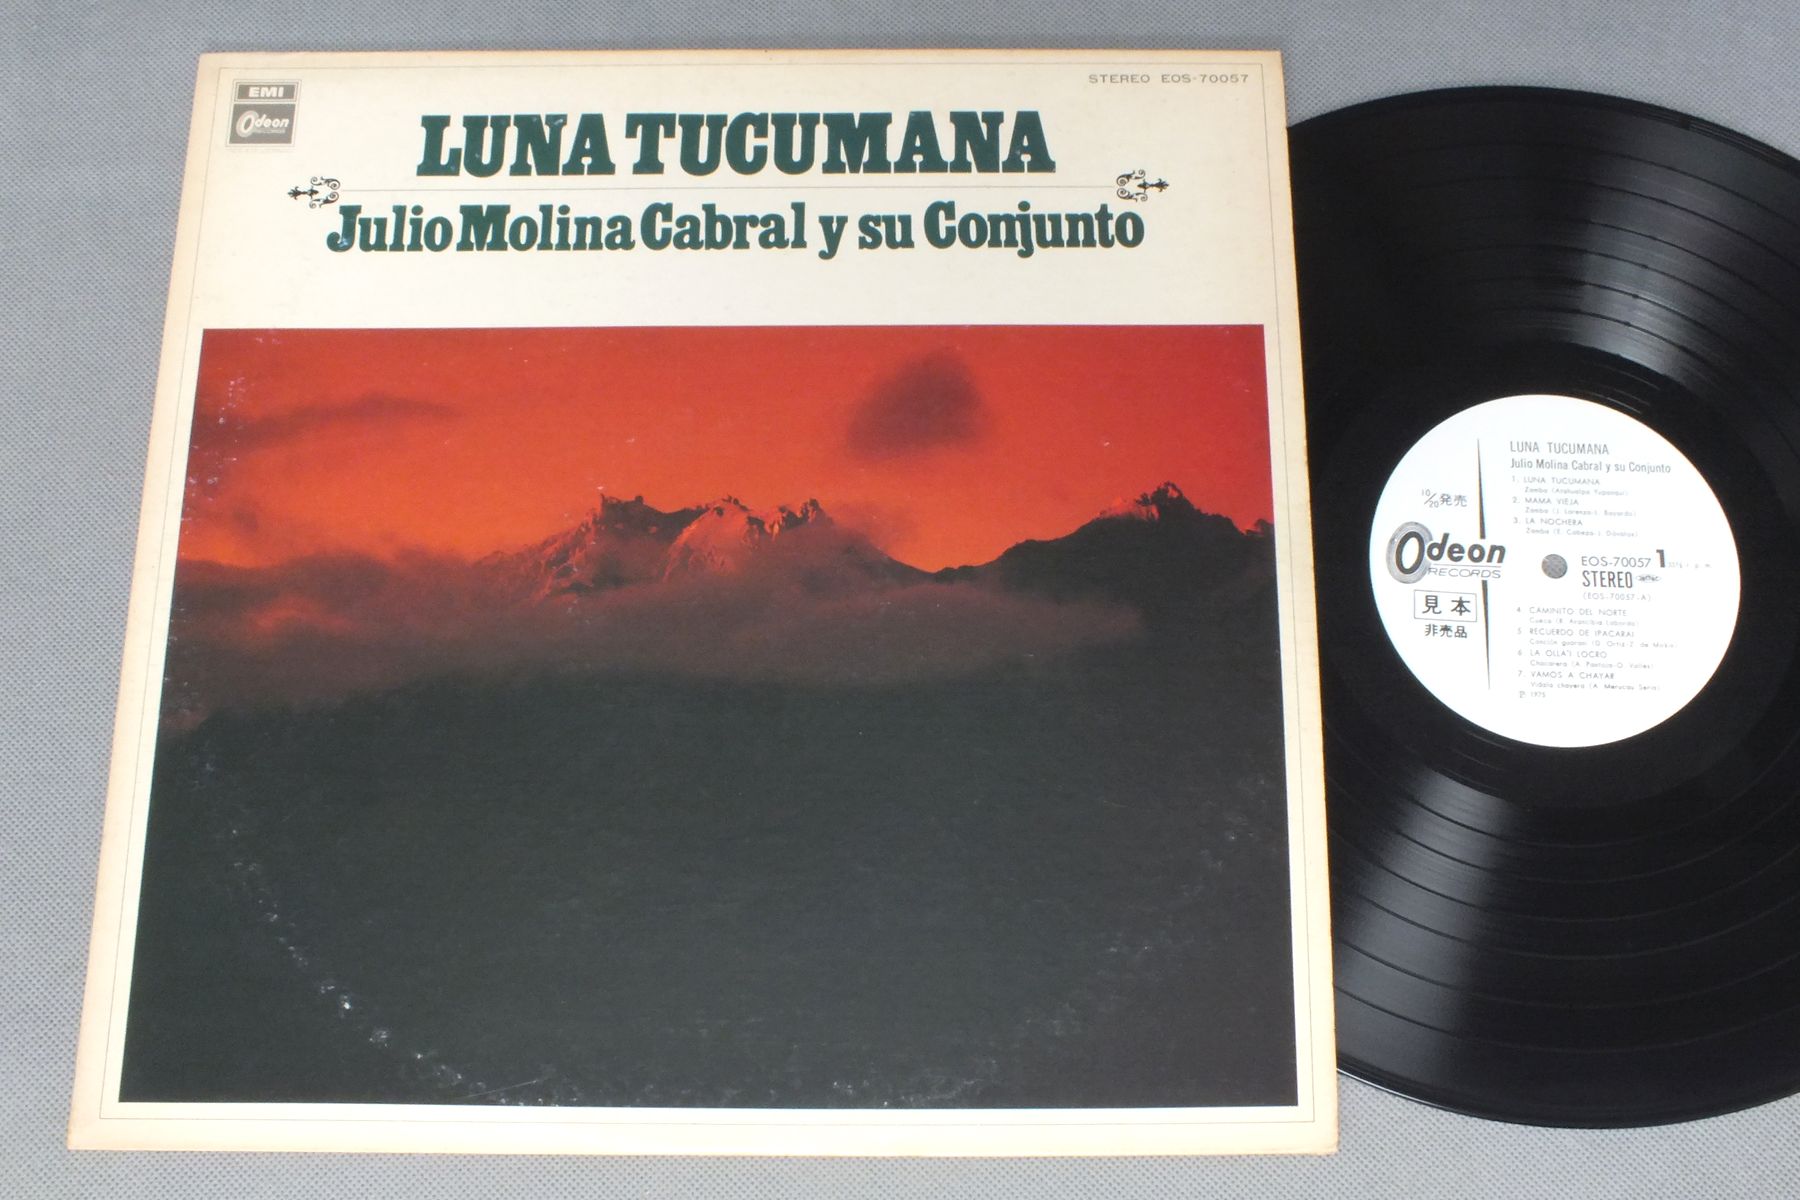 JULIO MOLINA CABRALフリオ・モリーナ・ガブラール/LUNA TUCUMANAトゥクマンの月 EOS-70057アナログレコード  詳細ページ